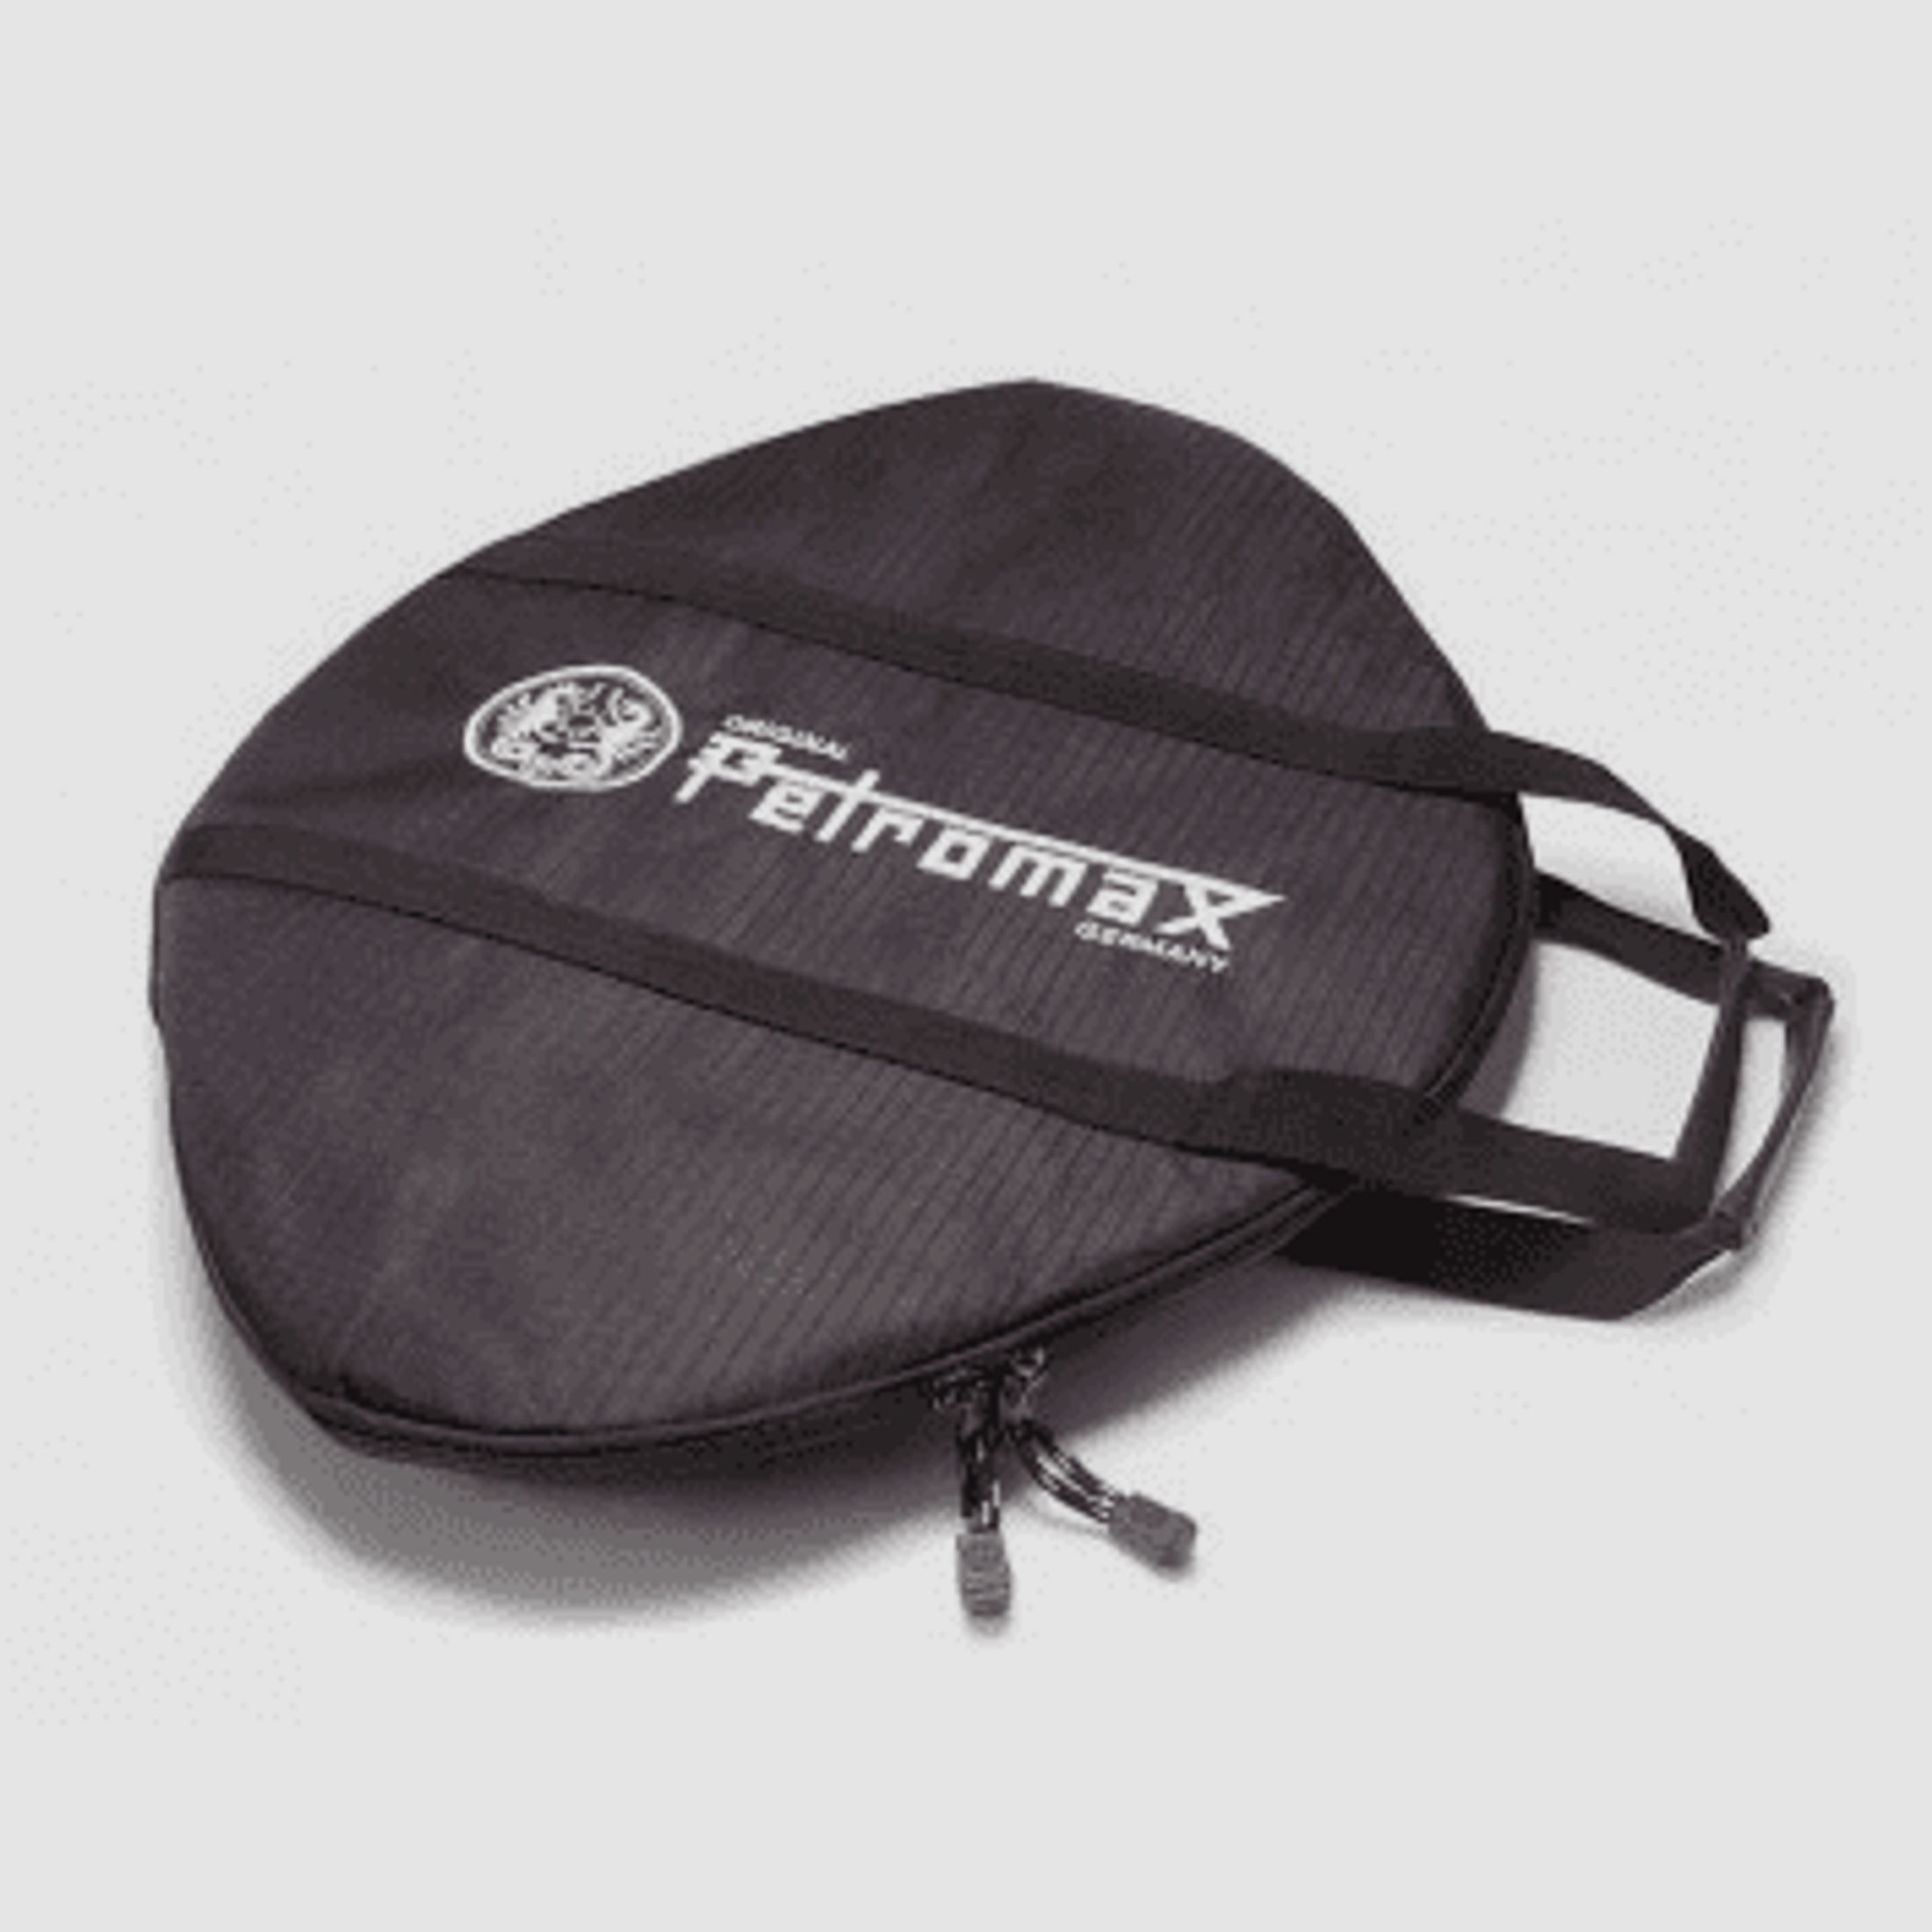 Petromax Transporttasche für Grill- und Feuerschalen fs38 fs48 und fs56